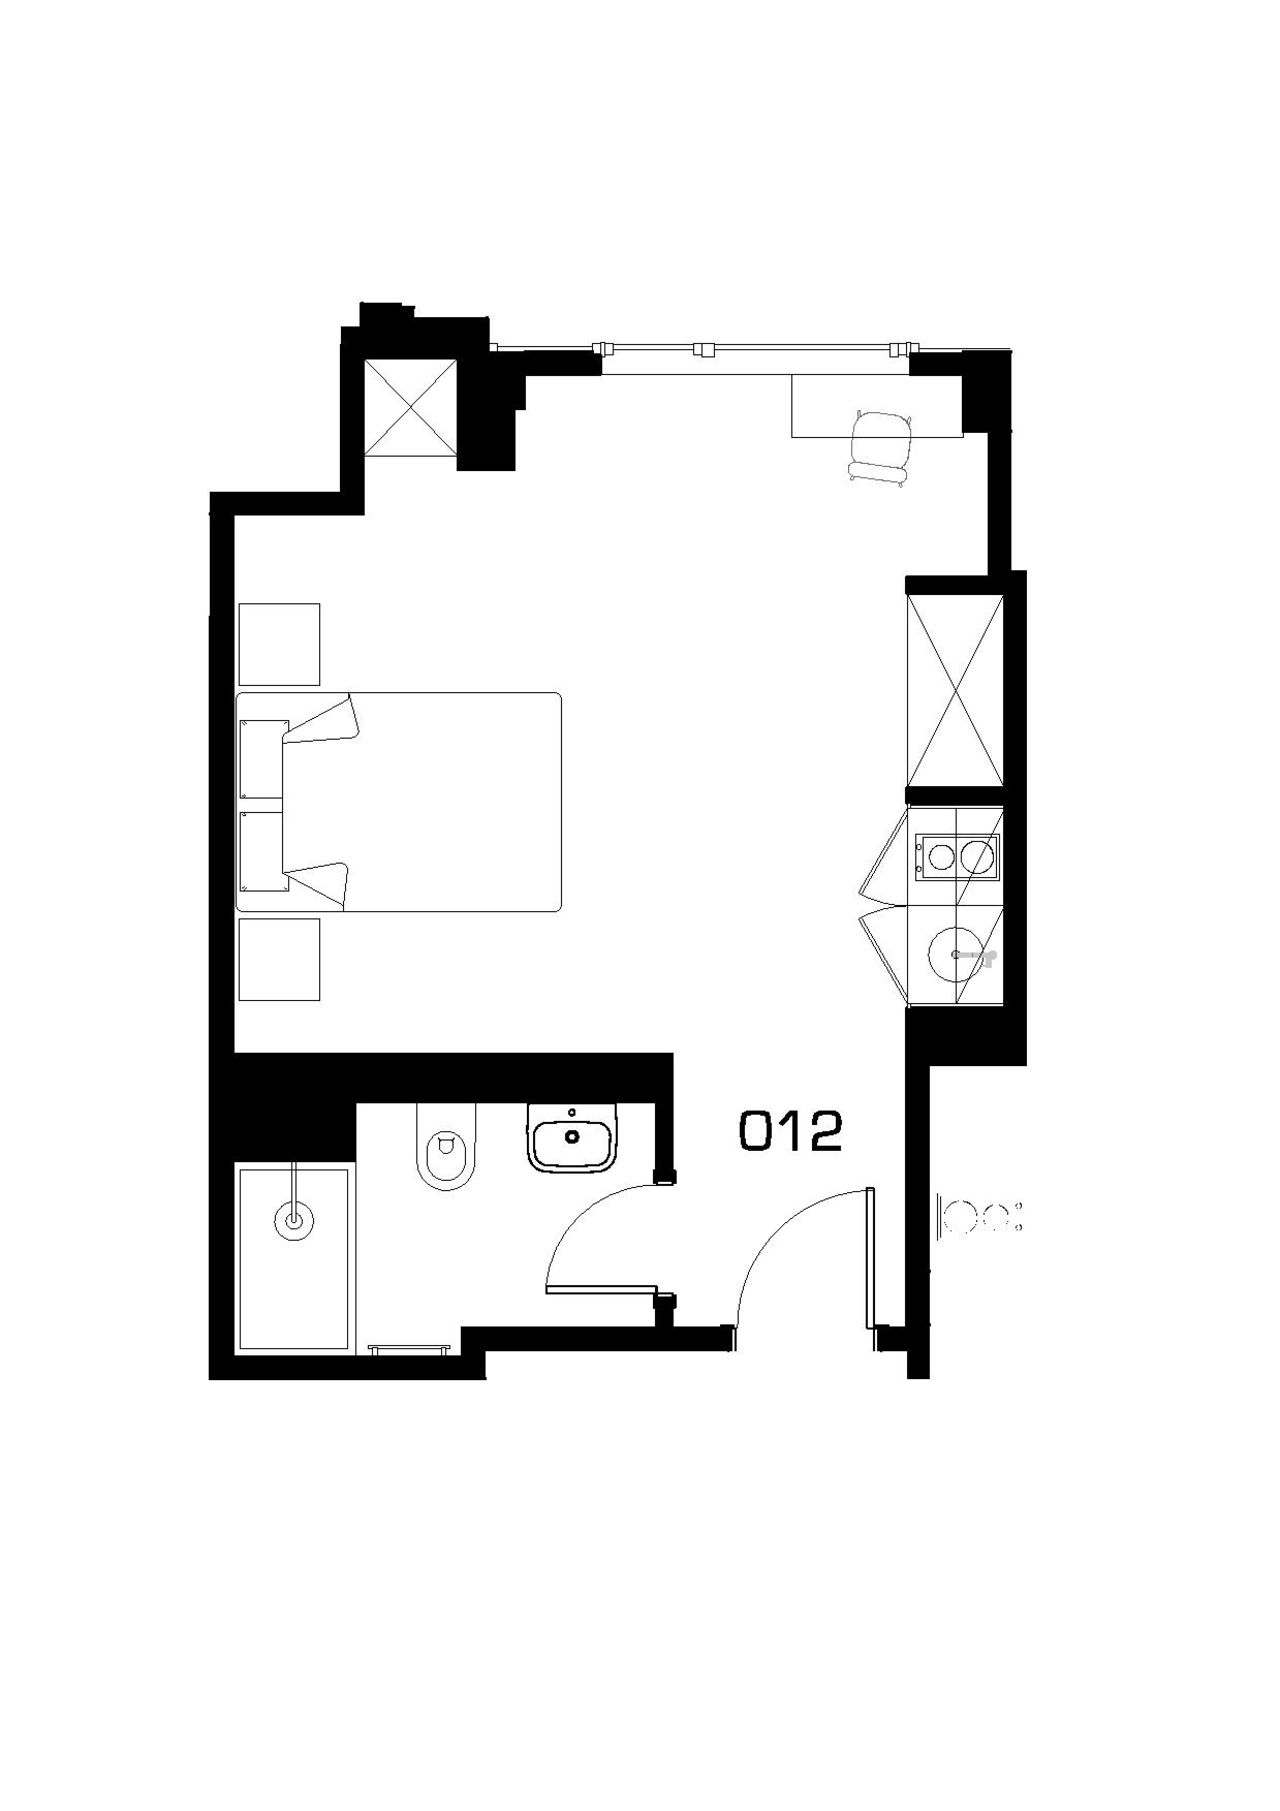 1 Bedrooms Studio to rent in Wellesley Road, London CR0